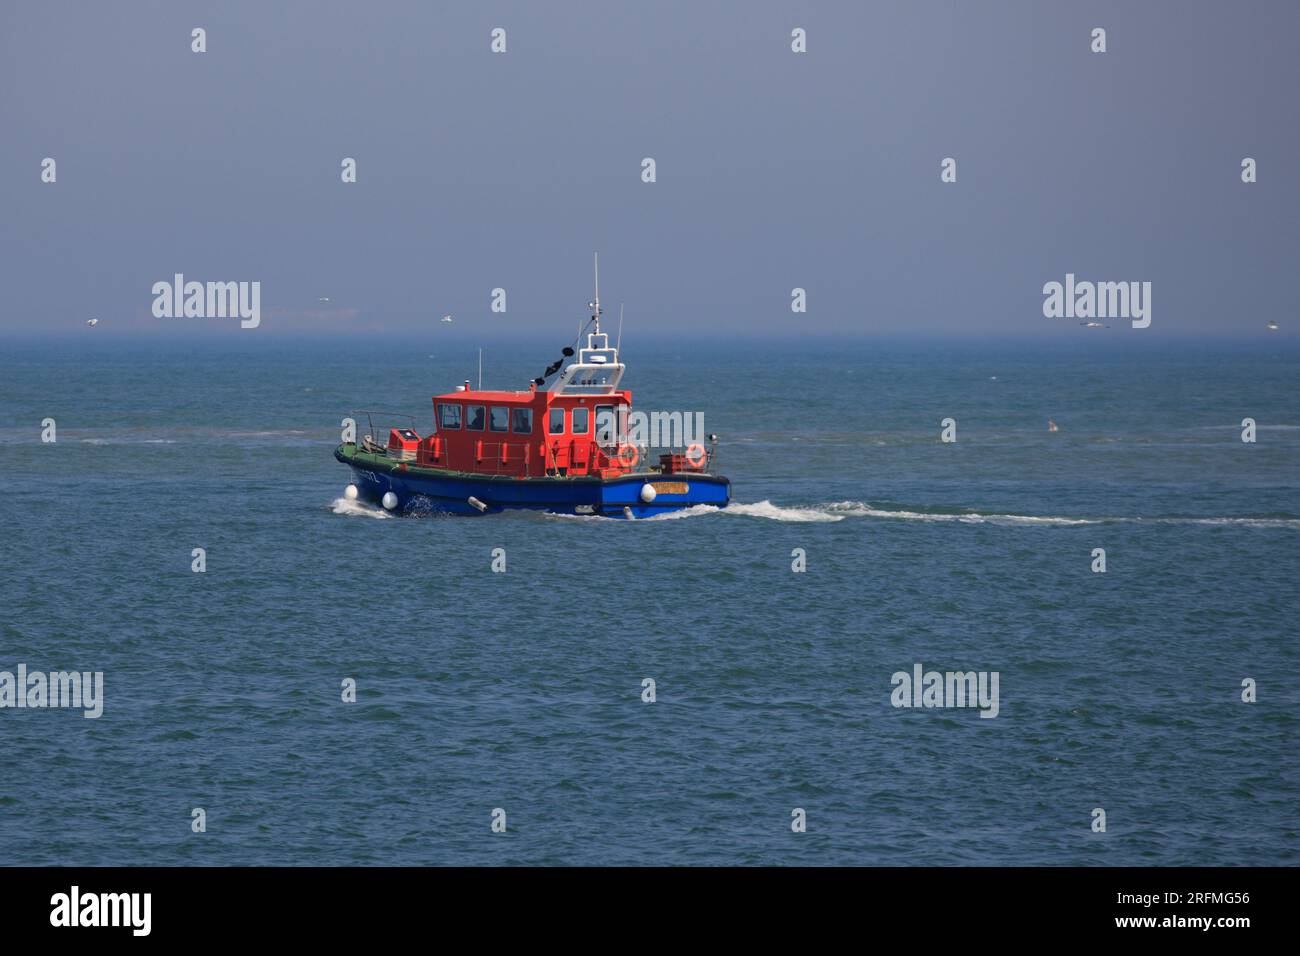 City Action Sauveteur en mer avec bateau et speedboat